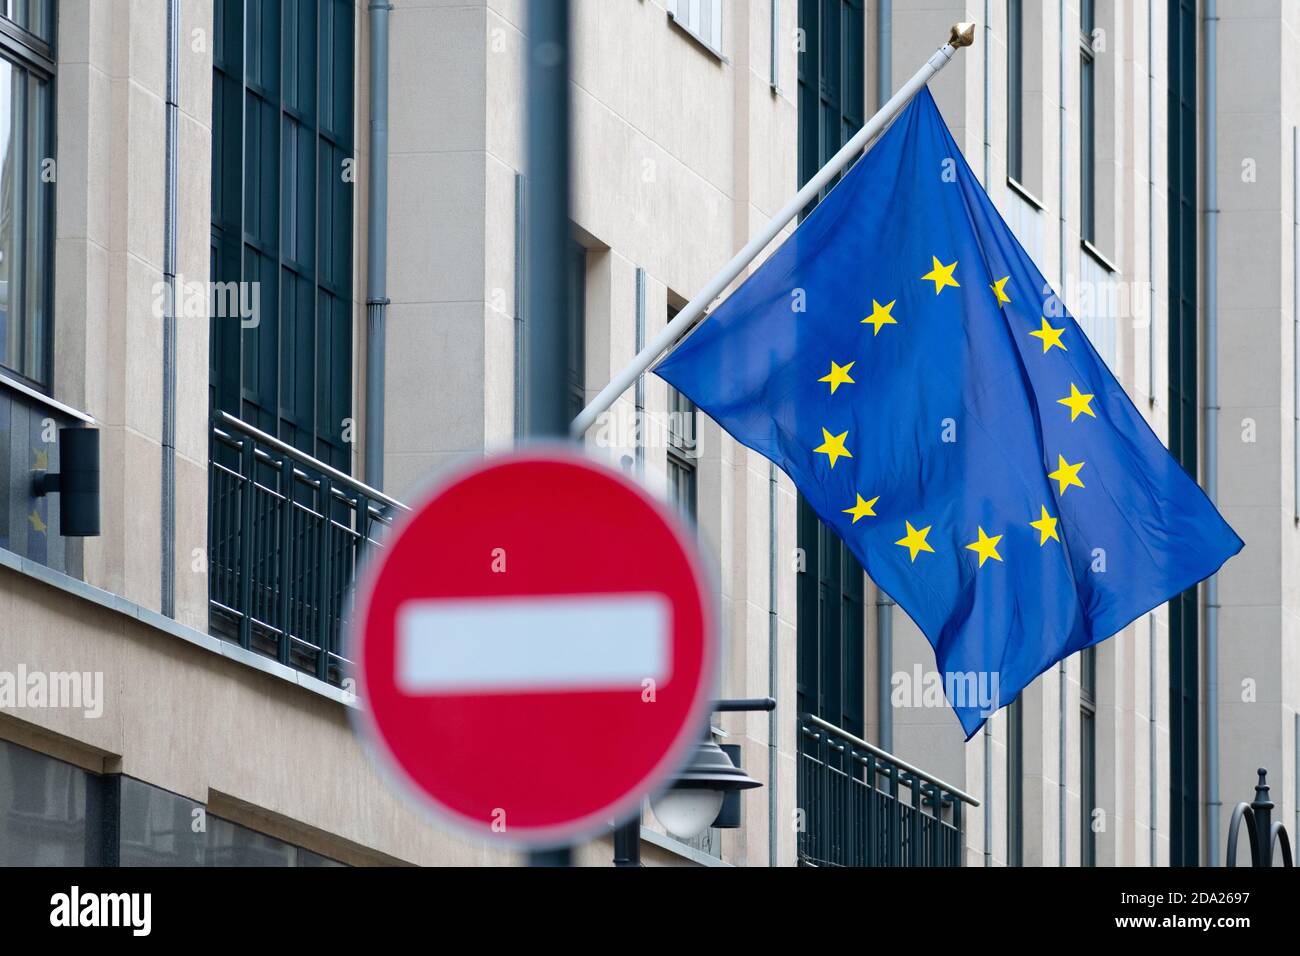 Drapeau de l'Union européenne avec rouge et blanc avertissement pas d'entrée signalisation routière, arrêt, panneau d'interdiction Banque D'Images